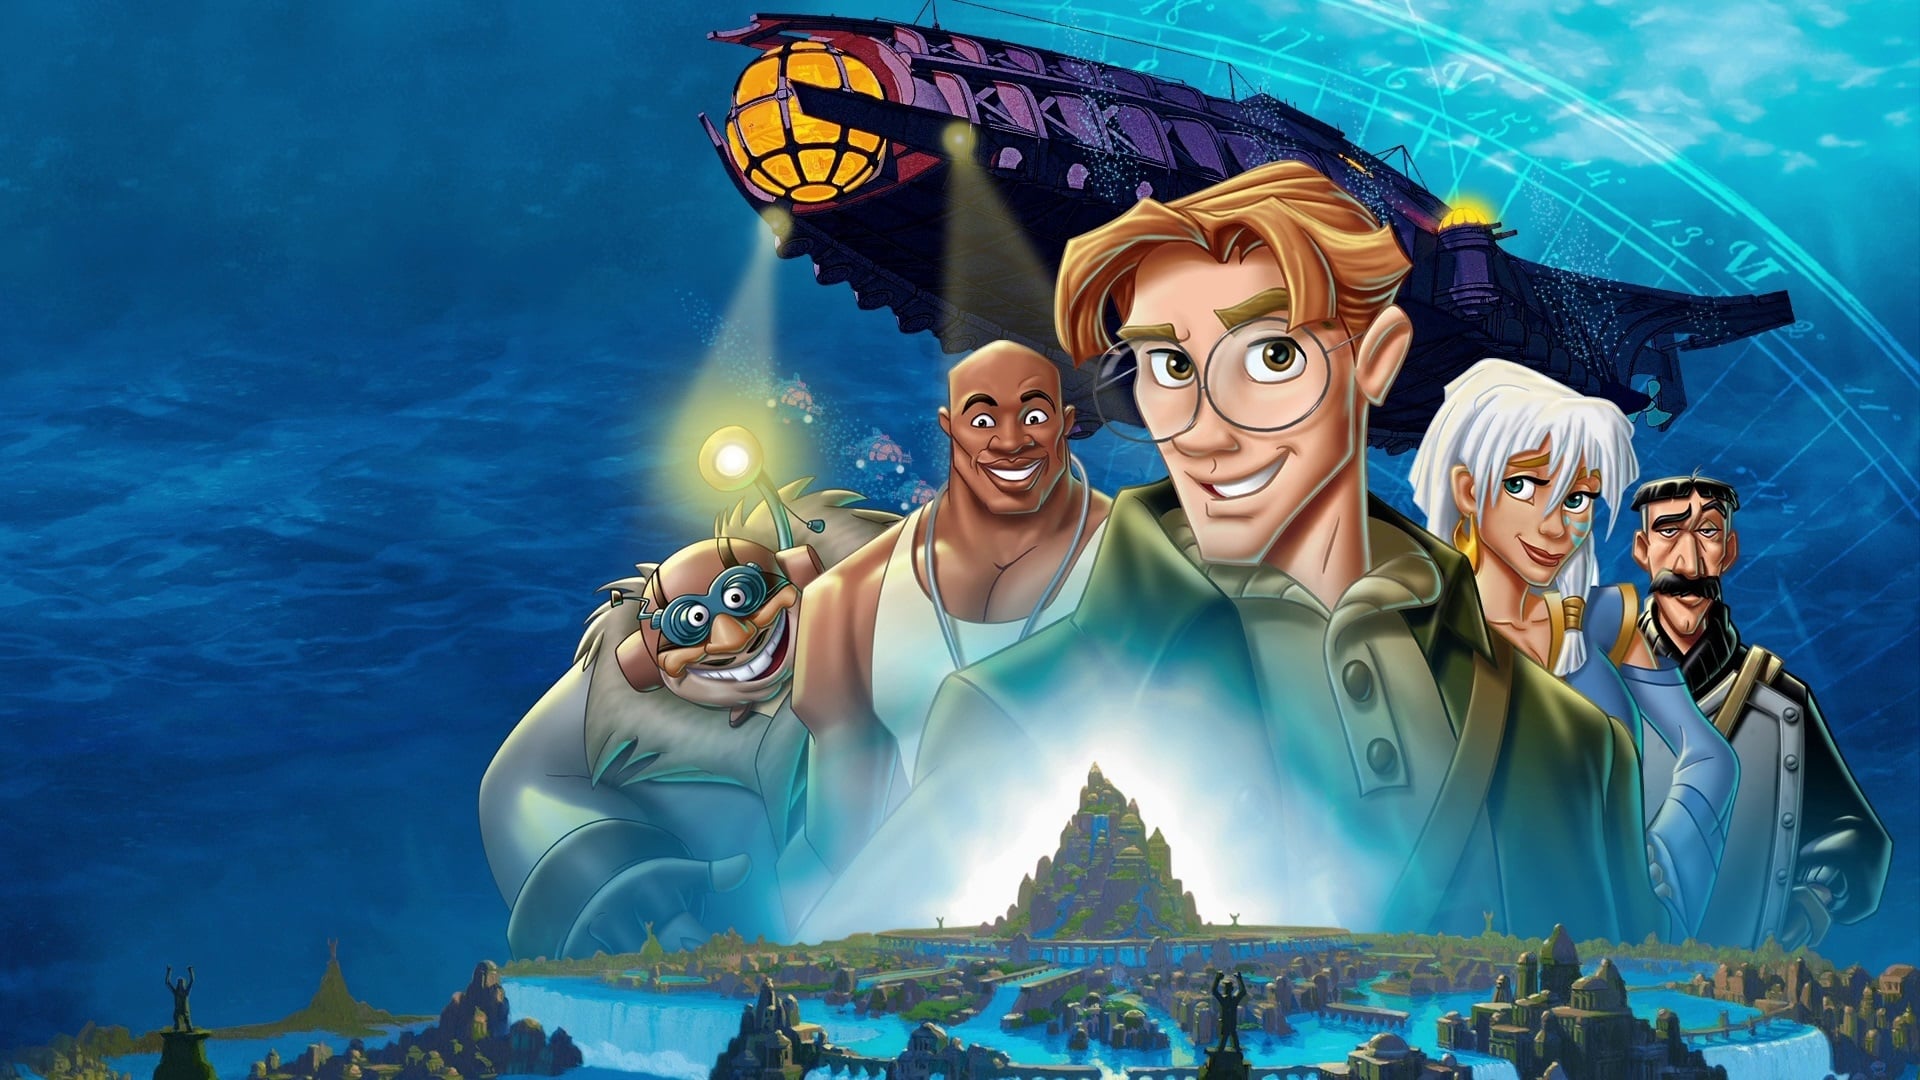 Atlantis: El imperio perdido (2001)